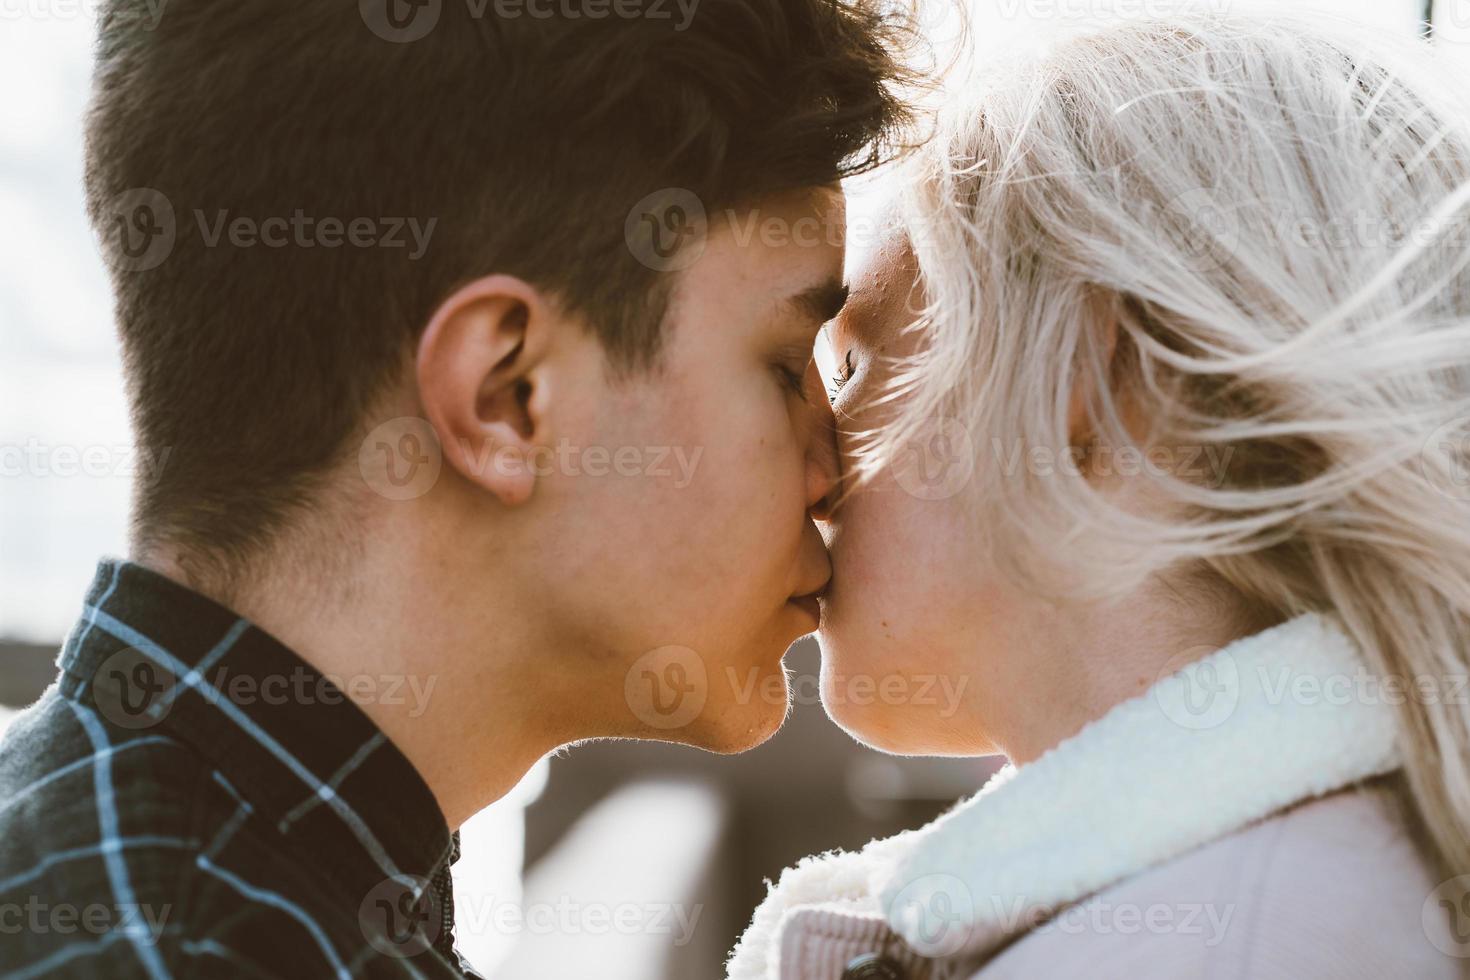 il ragazzo guarda teneramente la ragazza e vuole baciarla. una giovane coppia sta abbracciata. il concetto di amore adolescenziale e primo bacio, sentimenti sinceri dell'uomo e della donna. la città, il lungomare. avvicinamento foto